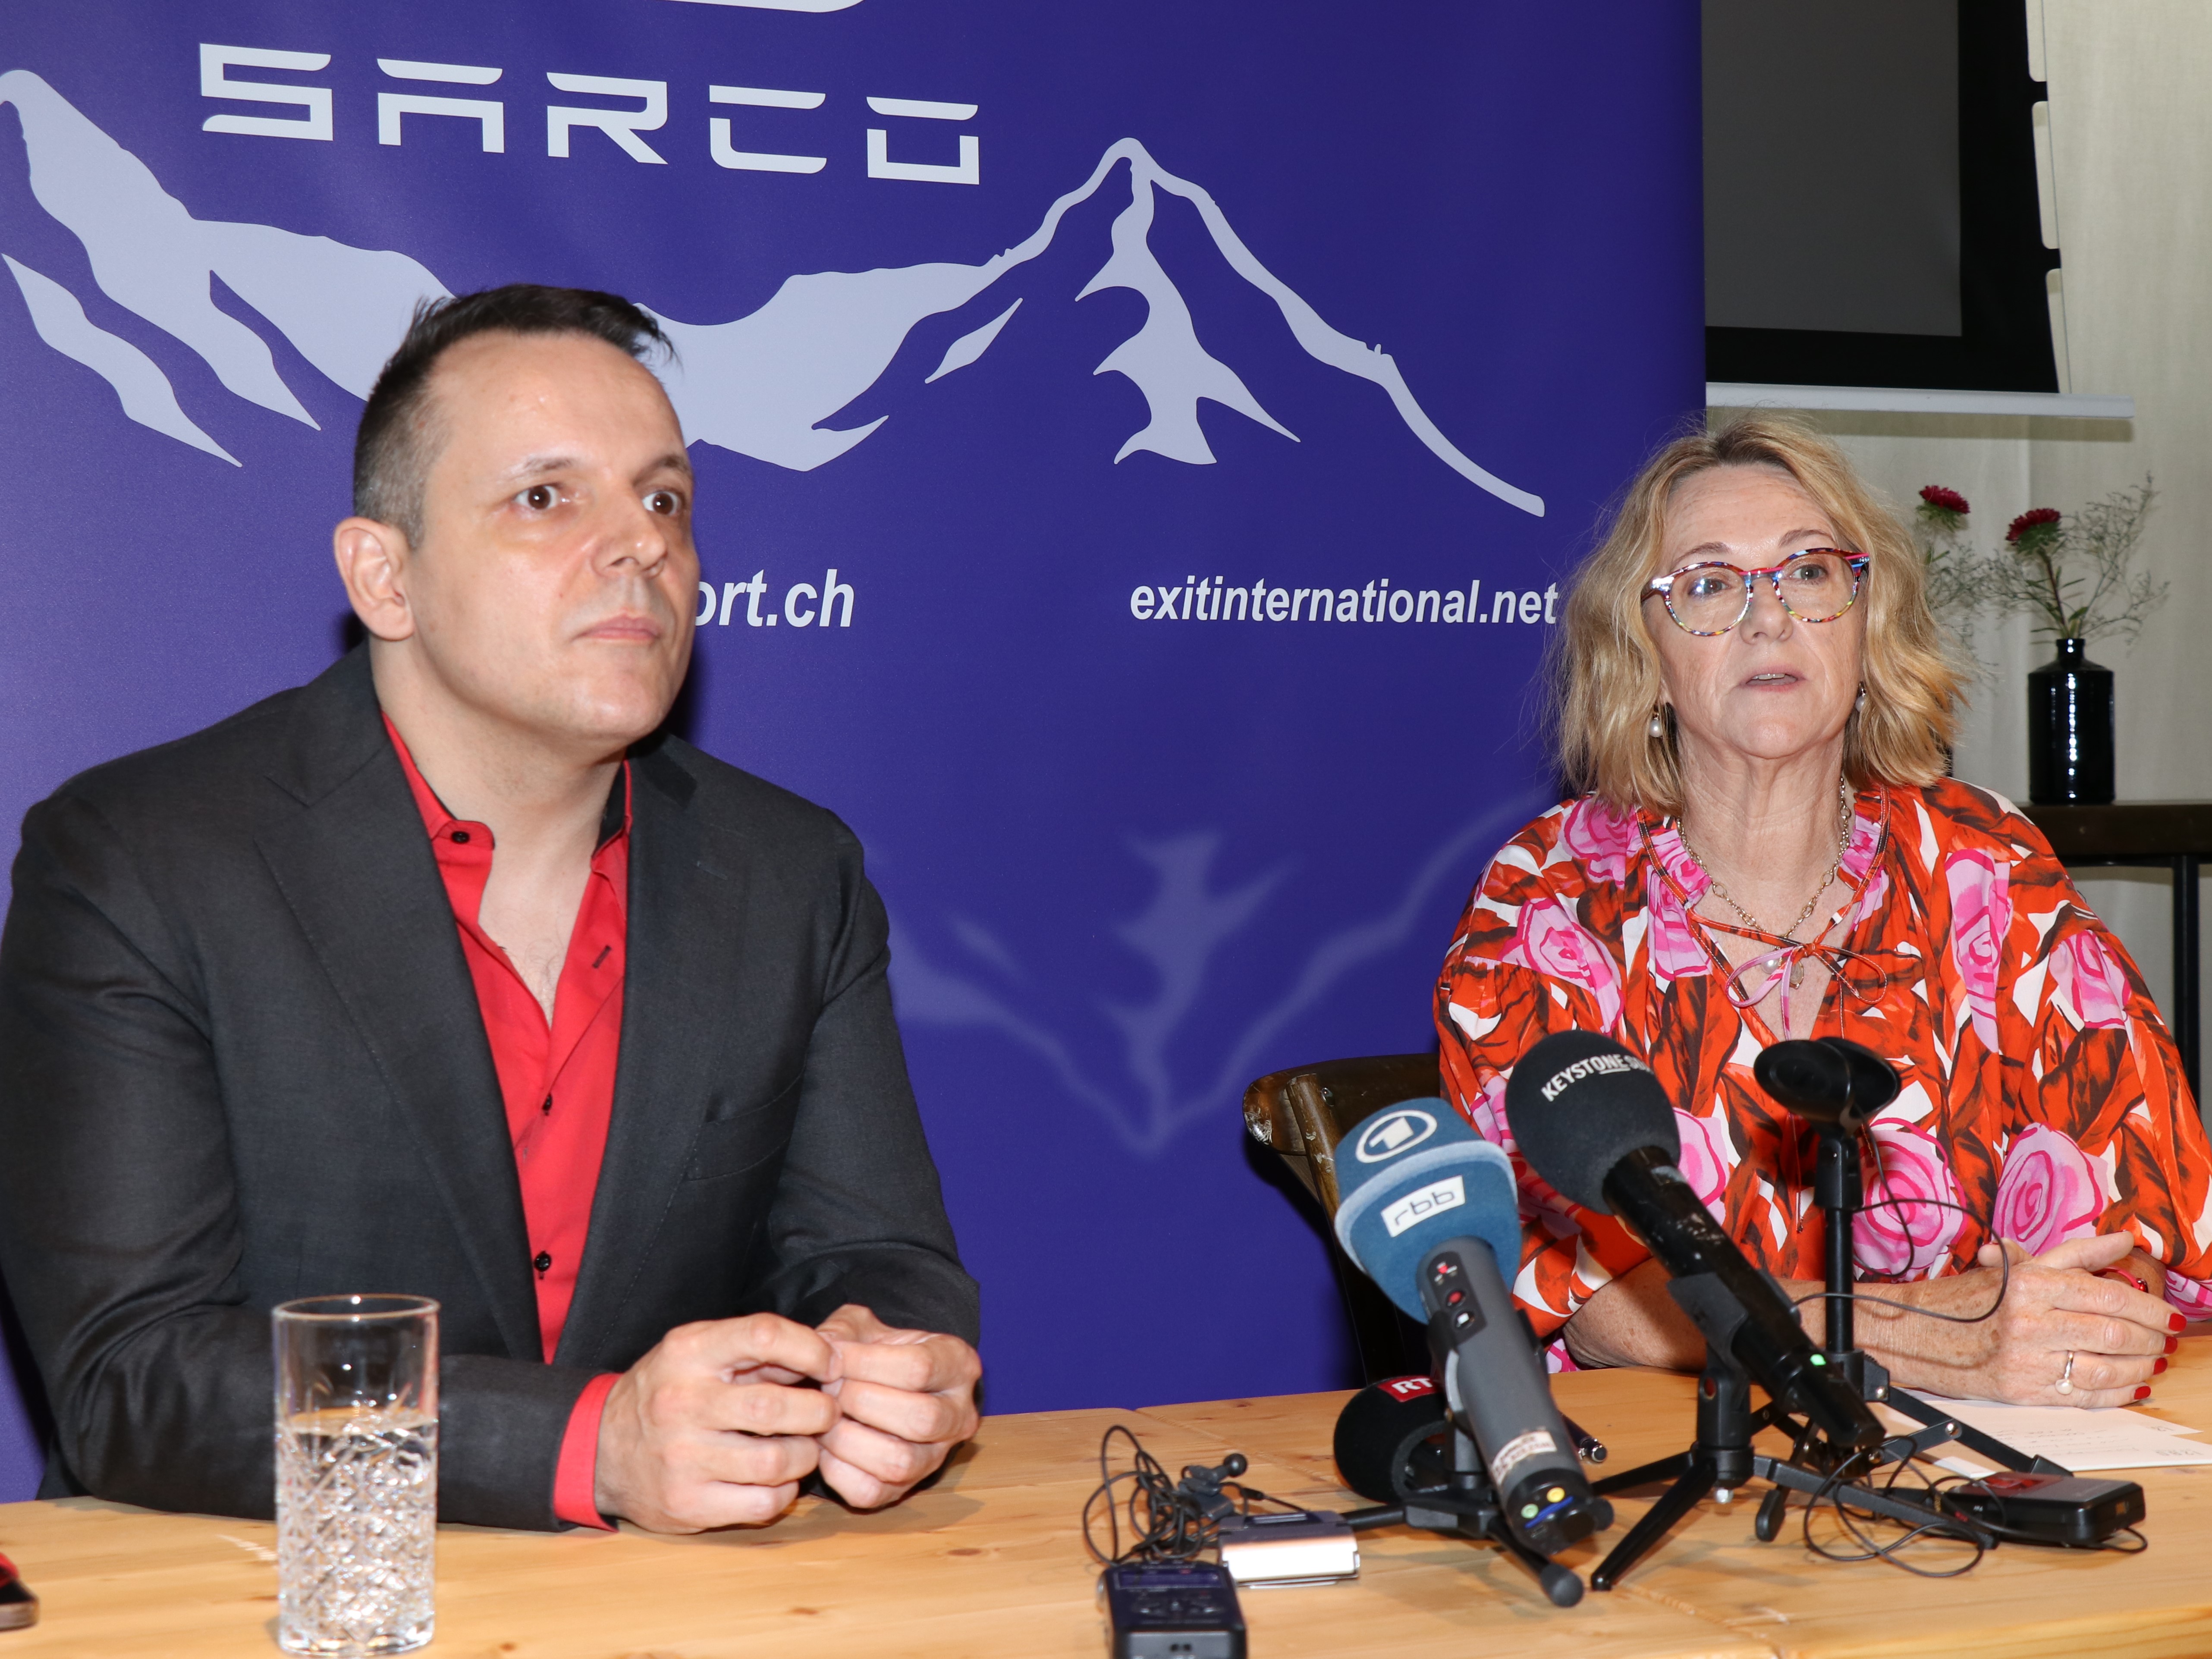 Fiona Stewart und Florian Willet von der neu gegründeten Organisation "The Last Resort" an der Pressekonferenz in Zürich. Ihrer Meinung nach bietet Sarco den friedlichsten Tod überhaupt, ohne Medikamente und Ärzte.